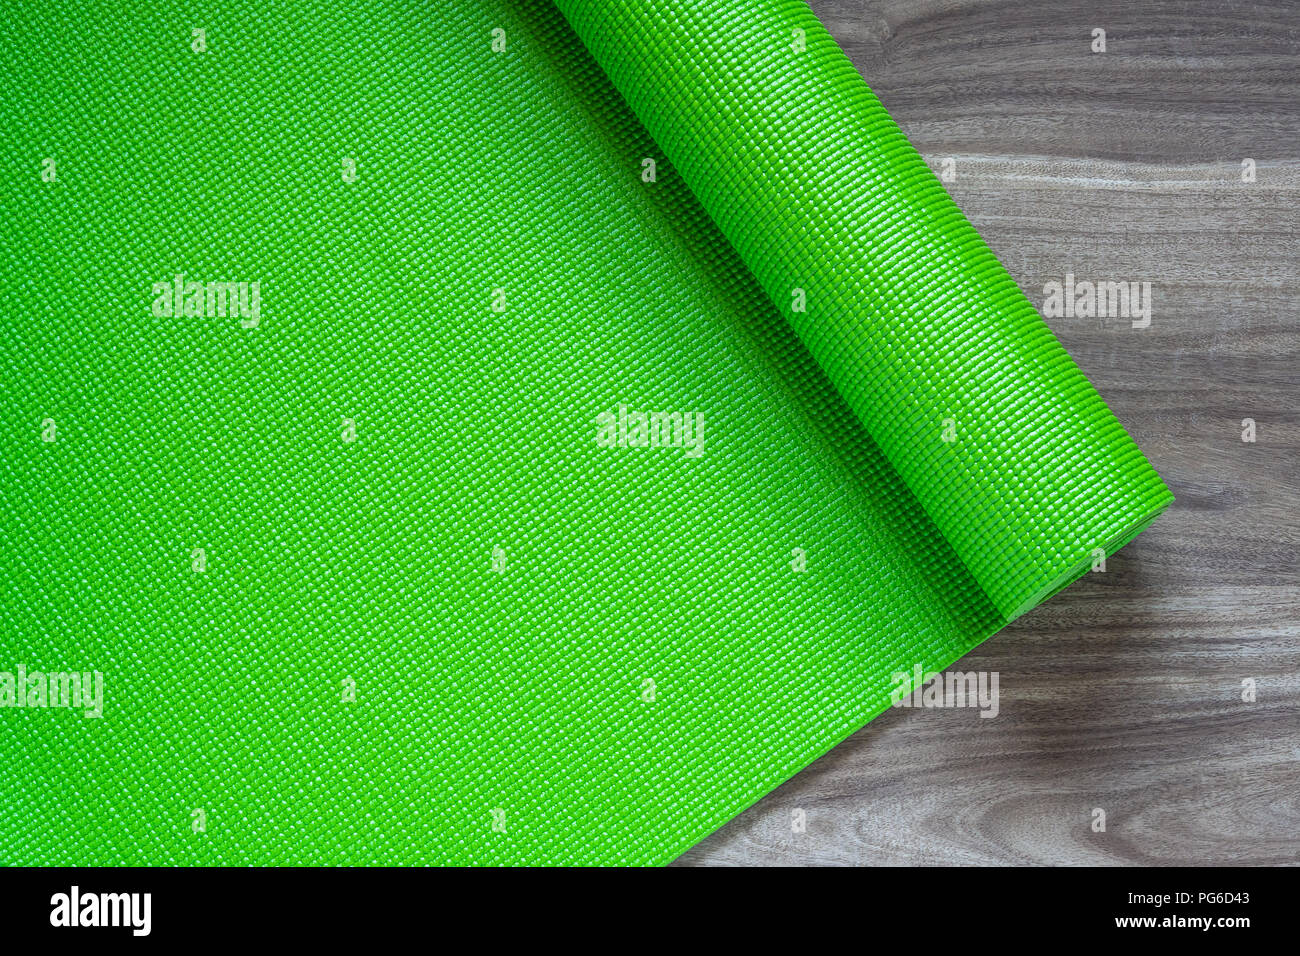 Grüne Yoga Matte auf einem hölzernen Hintergrund, Ansicht von oben mit der Kopie. Actie gesunder Lebensstil Hintergrund Konzept. Stockfoto